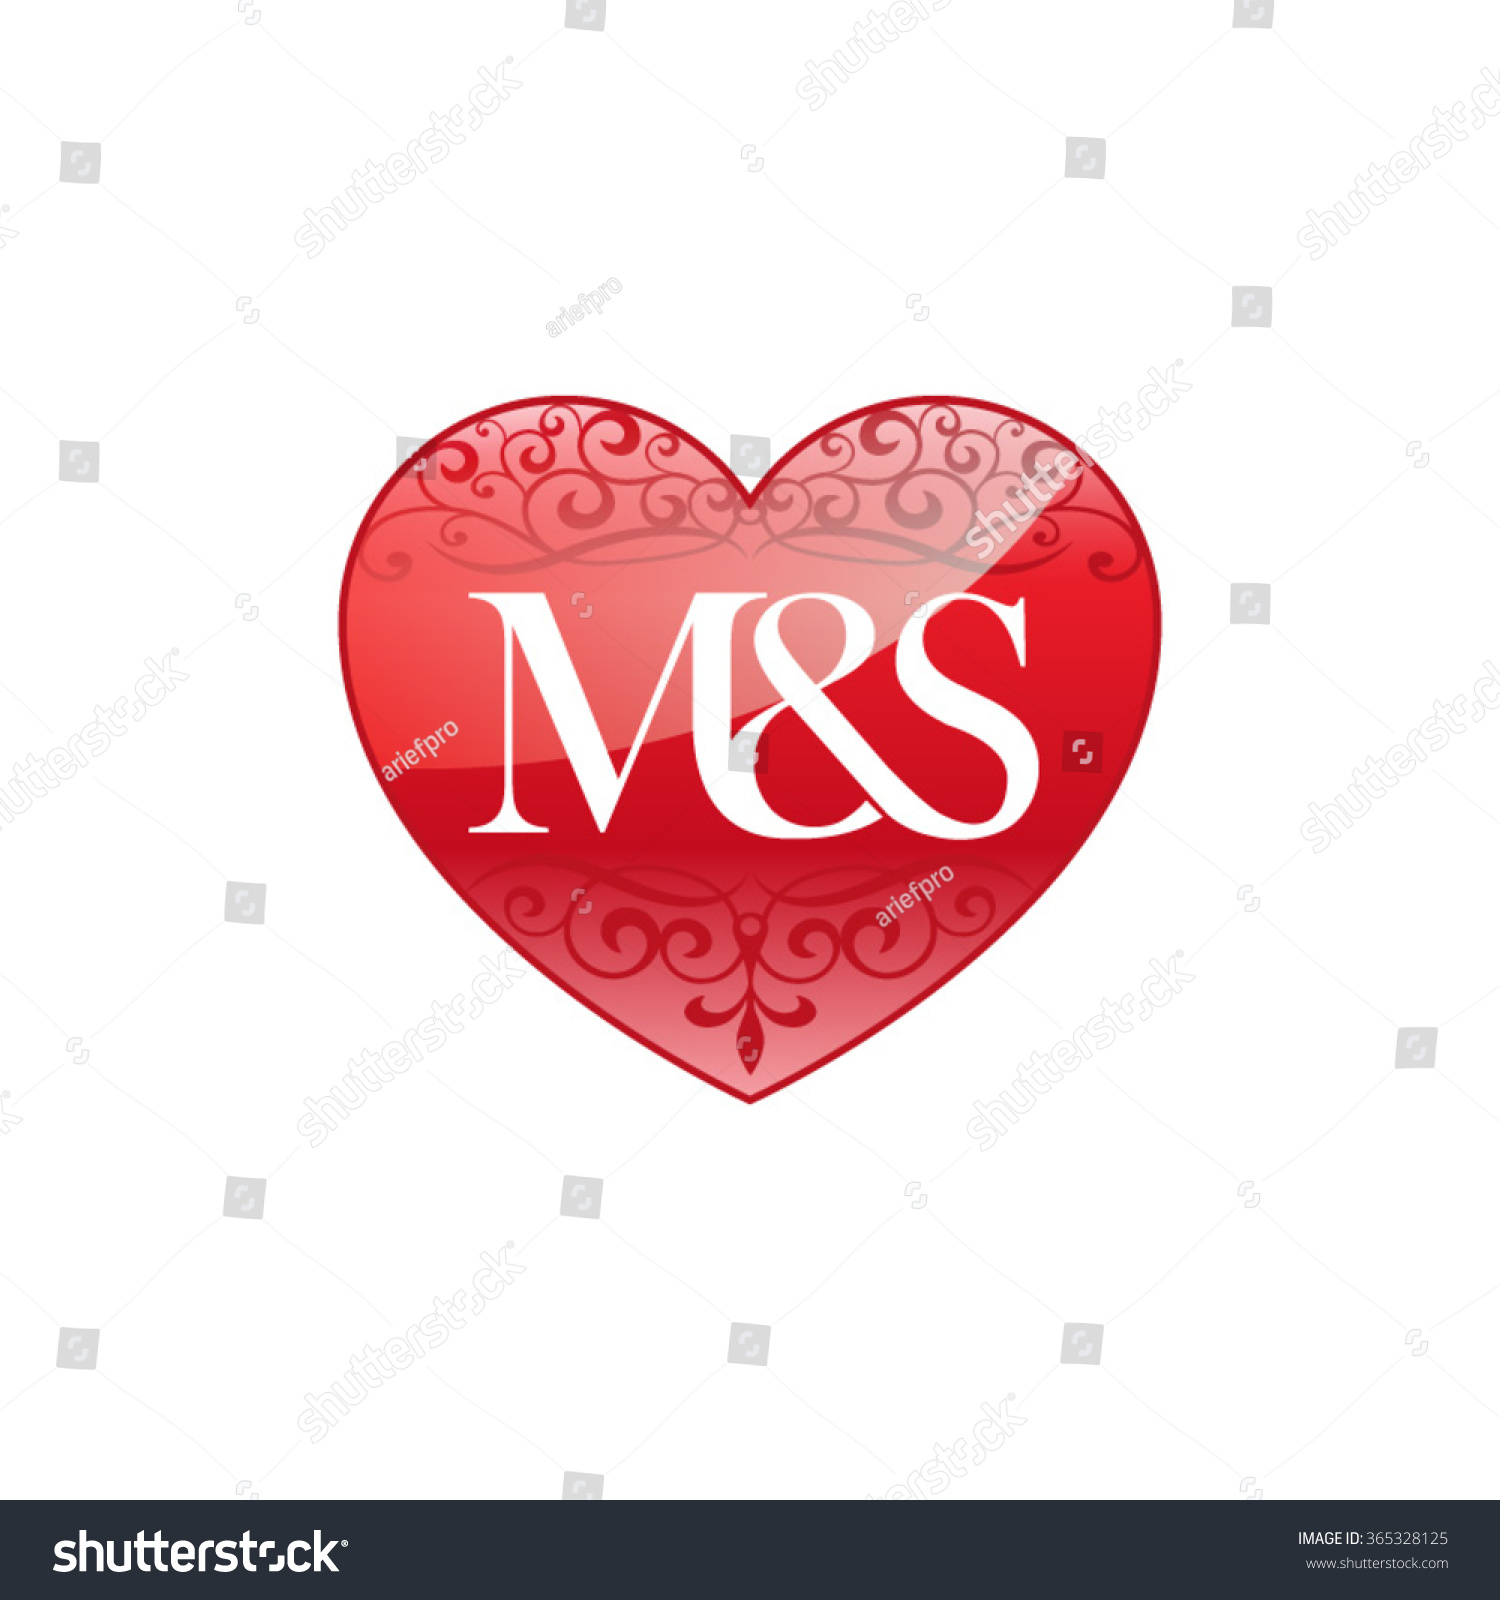 صور حرف m و s في قلب رومانسية , s مع m بعض , m & s , m + s صقور الإبدآع